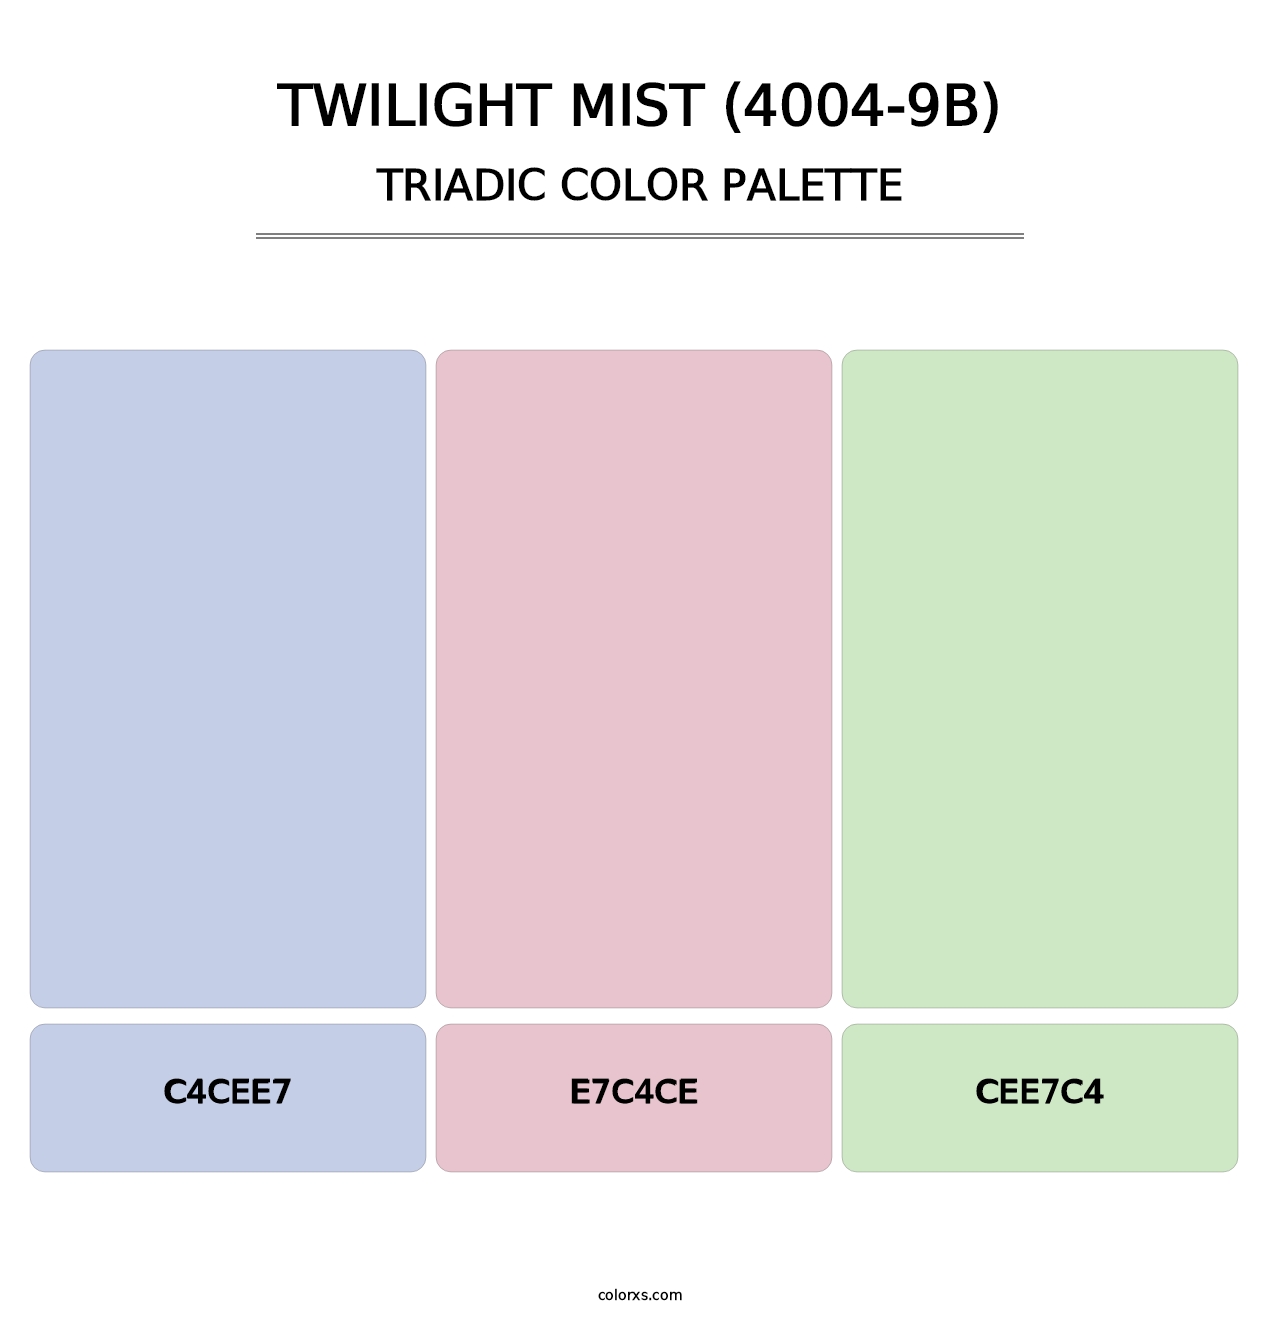 Twilight Mist (4004-9B) - Triadic Color Palette